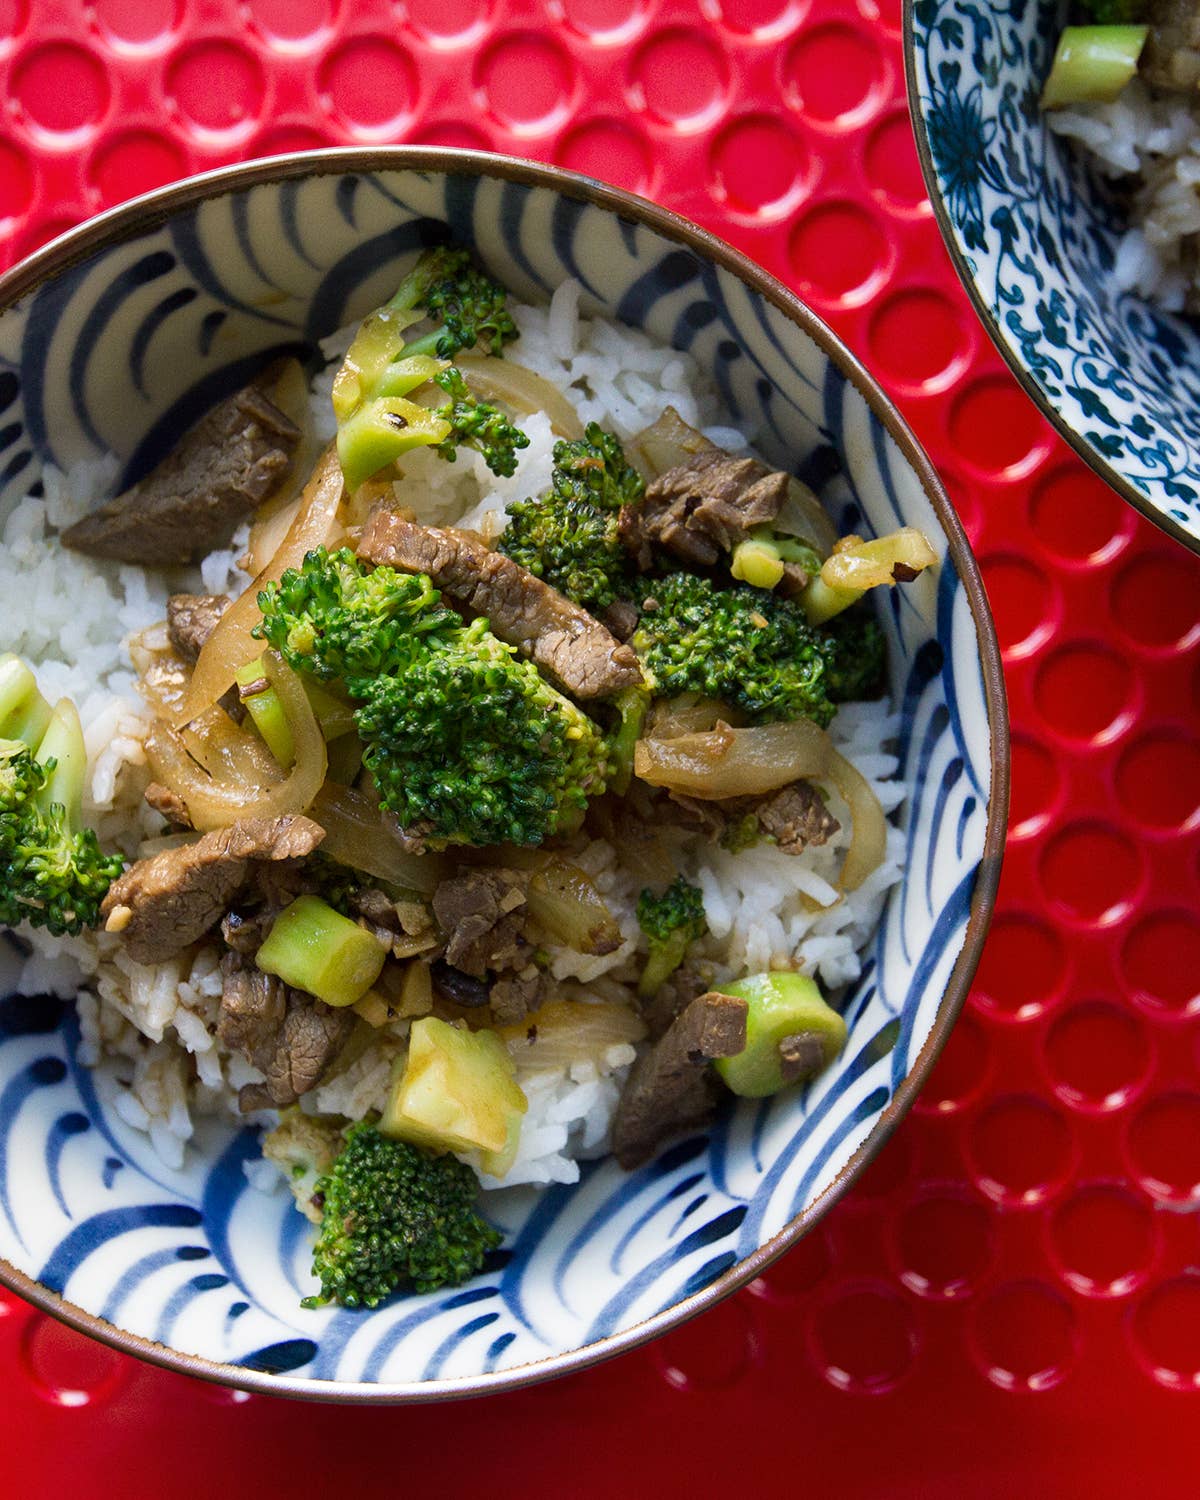 Stir-Fried Beef with Broccoli